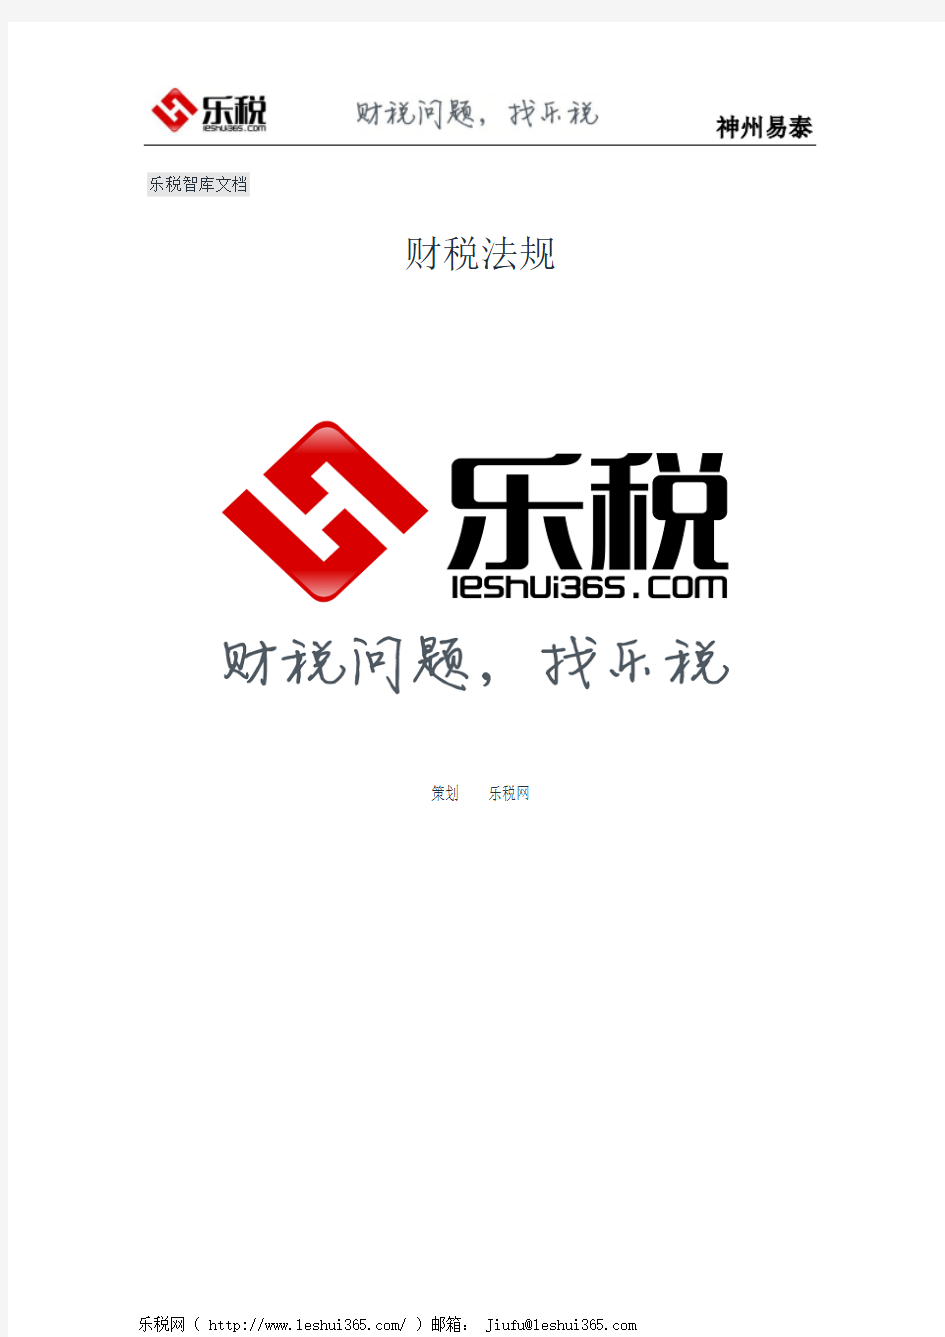 上海市国家税务局 上海市地方税务局关于印发《上海市国家税务局